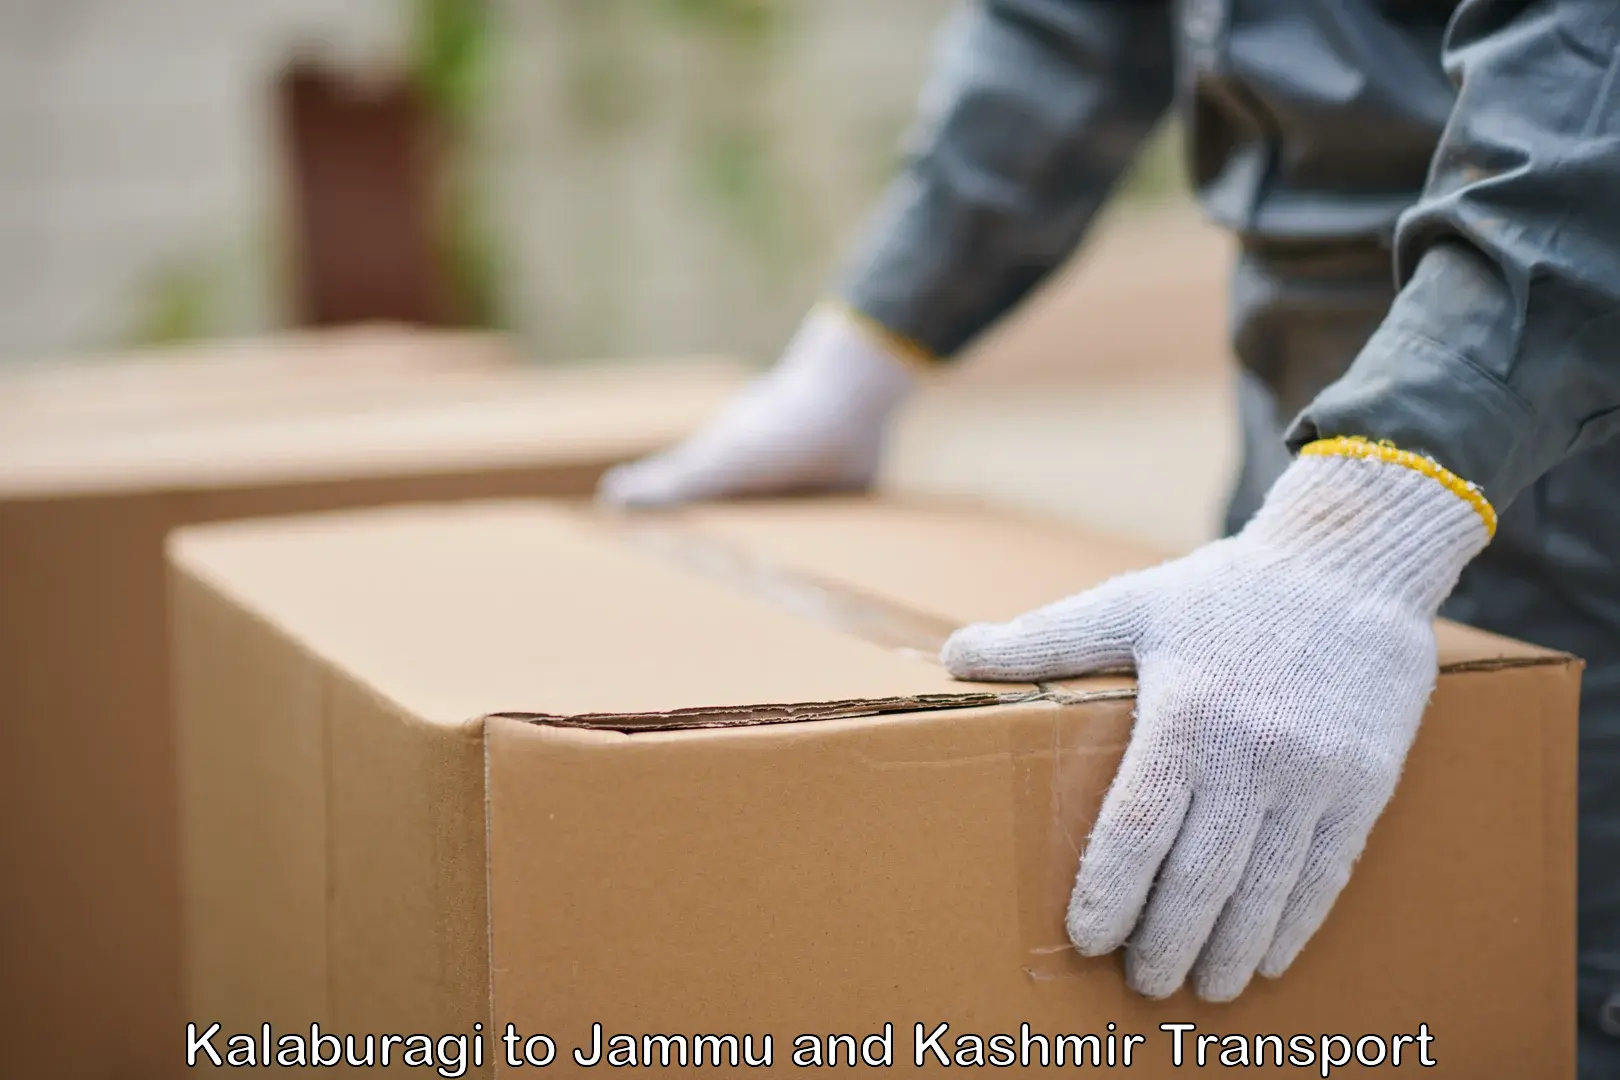 Container transport service Kalaburagi to Jammu and Kashmir